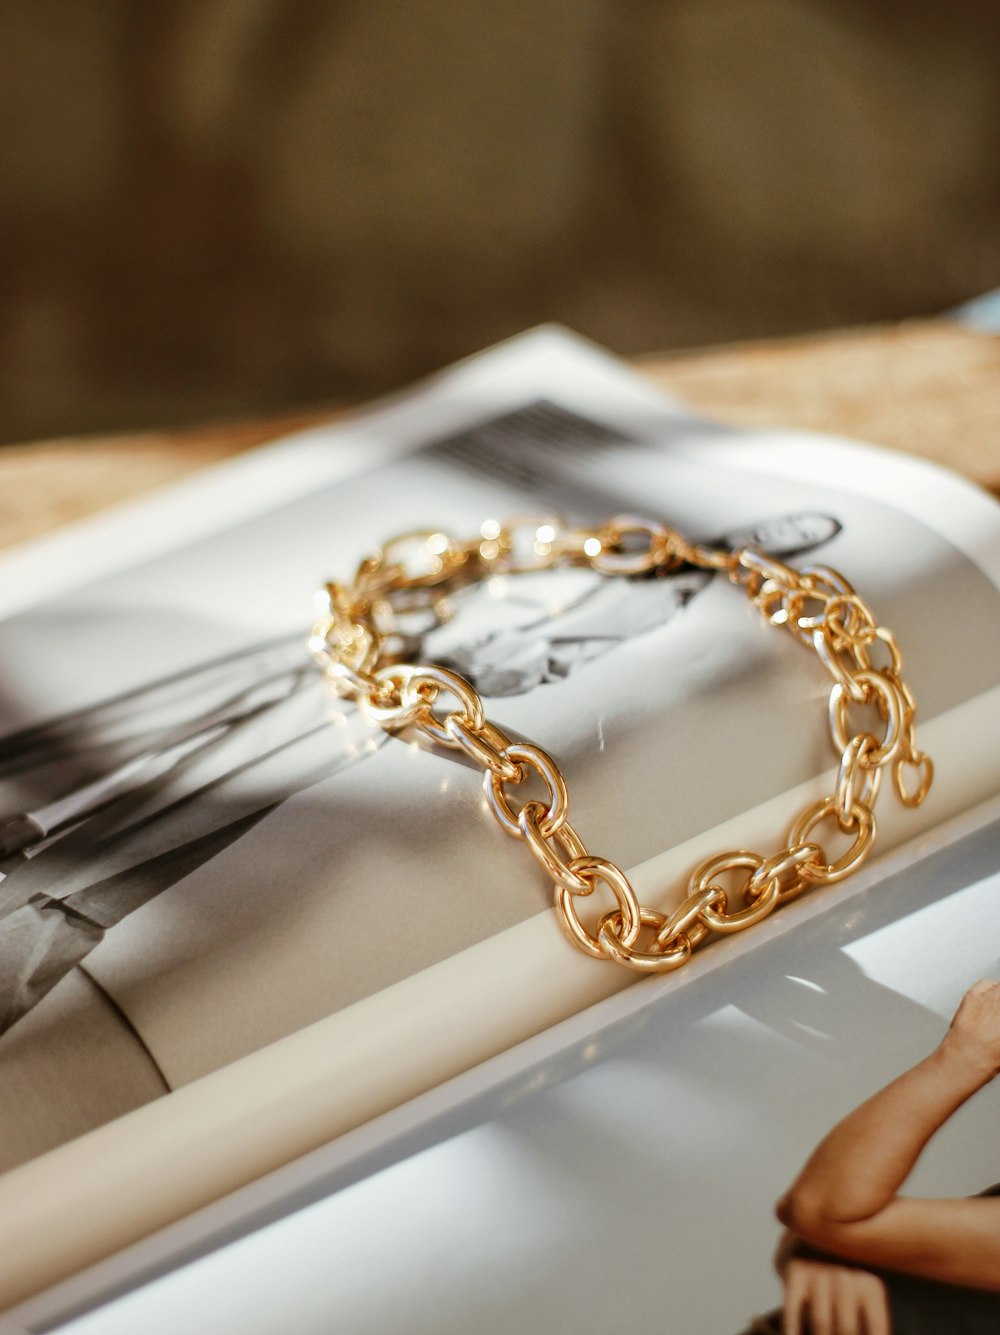 Un brazalete de cadena de oro sentado encima de una revista